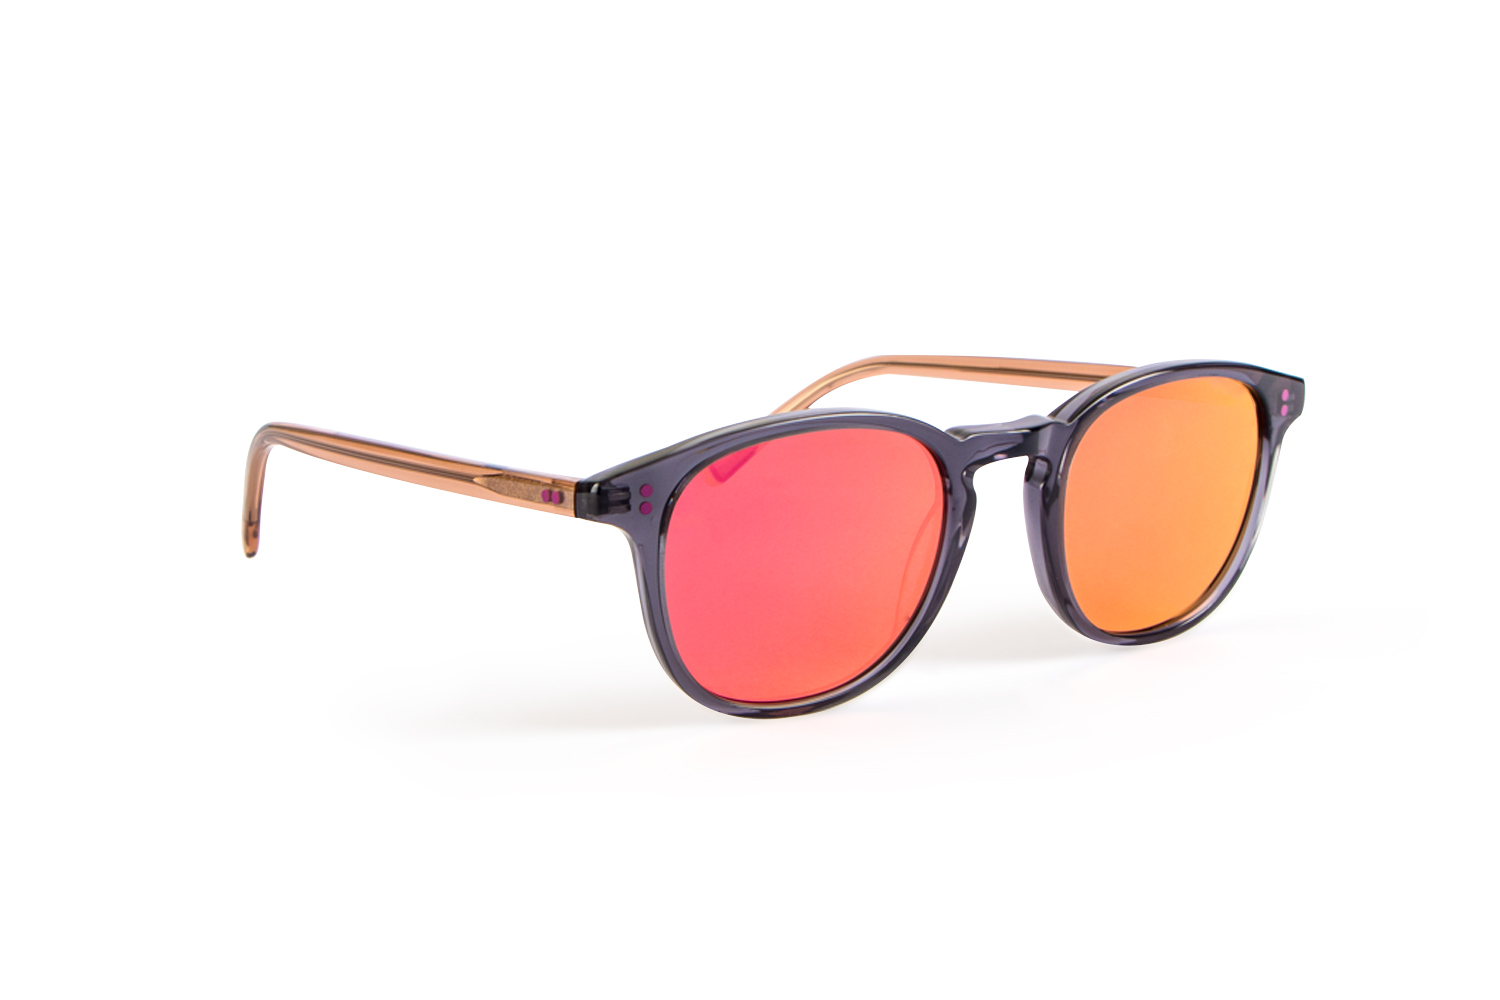 Invicta Men's Pro Diver Retro Square Sunglasses, Pink (9404-PRO-53)